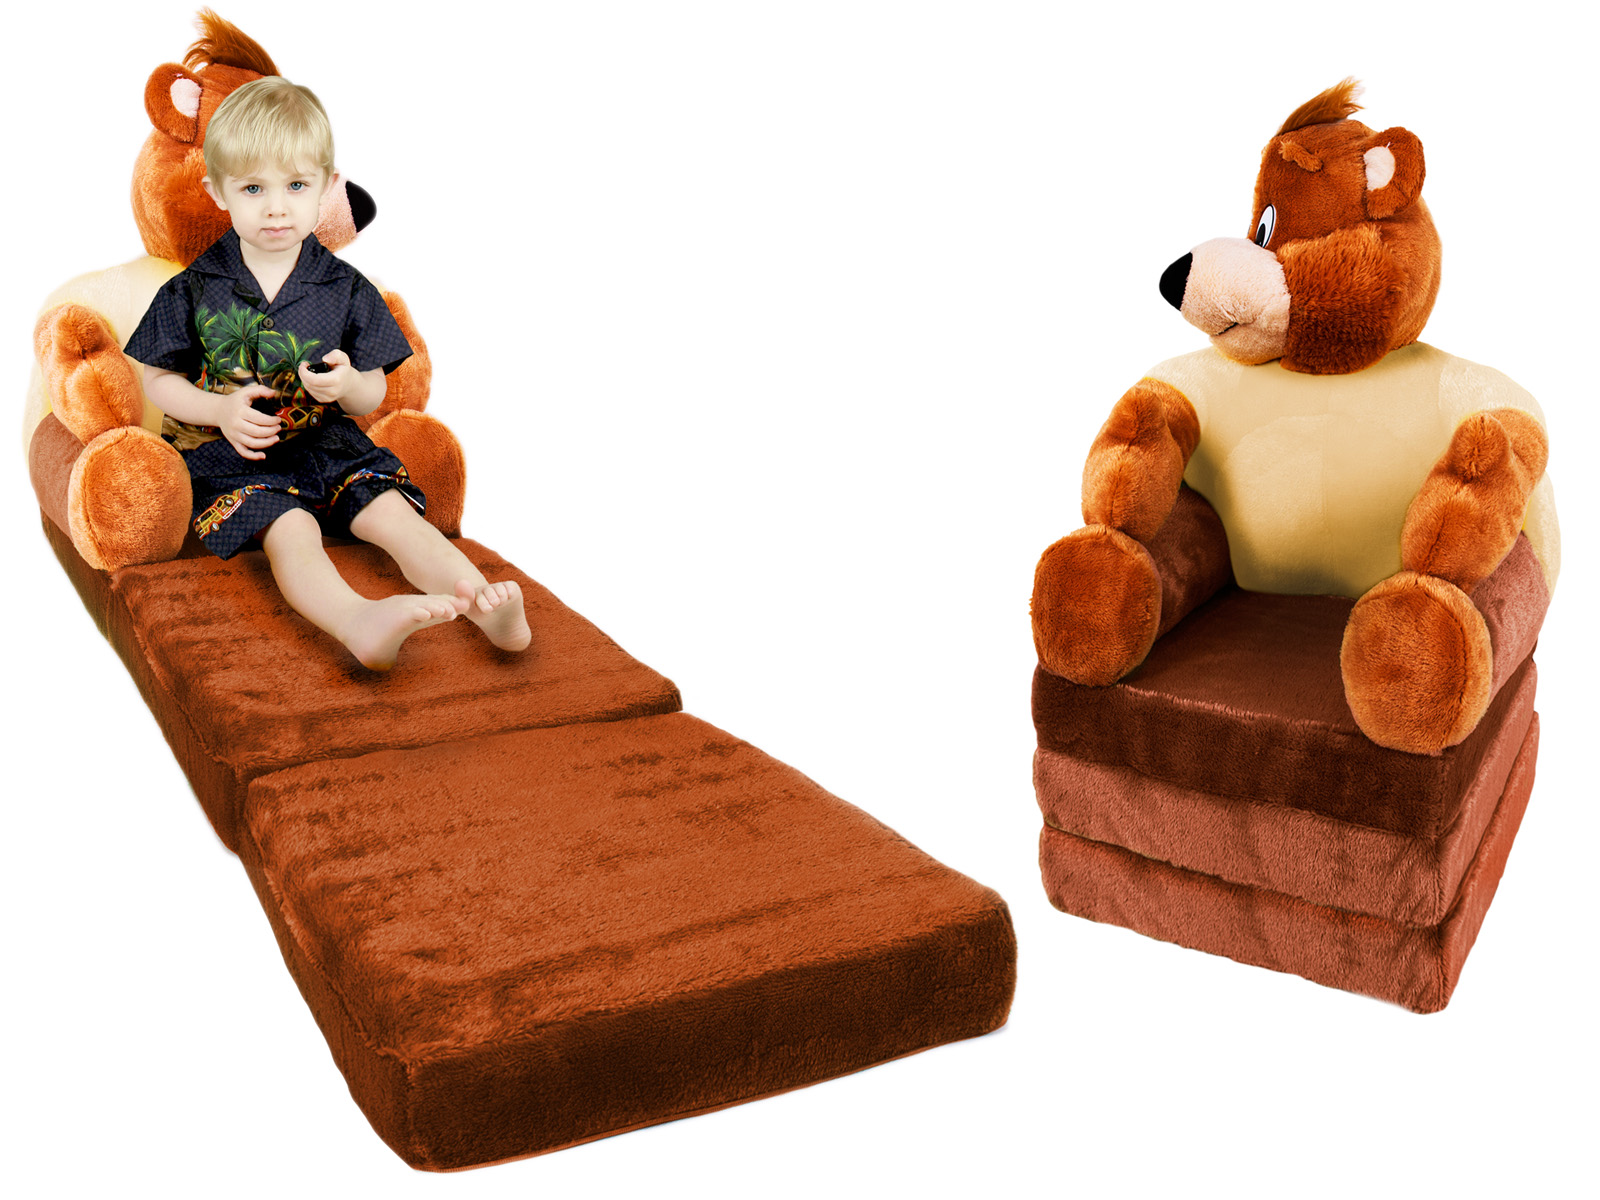 мягкая игрушка кресло маша и медведь